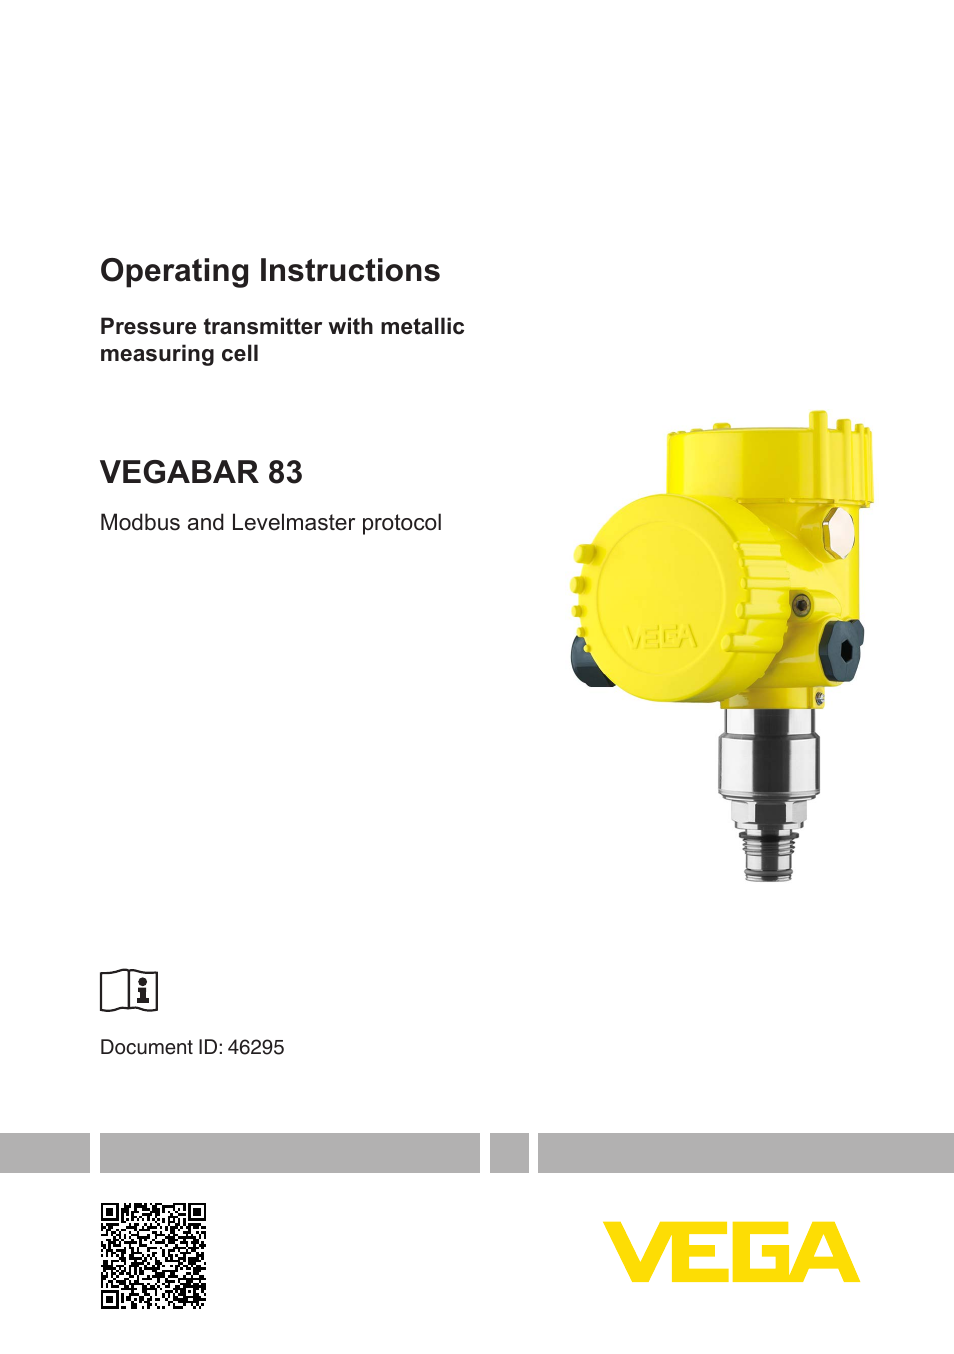 VEGABAR 83 Modbus and Levelmaster protocol - Operating Instructions